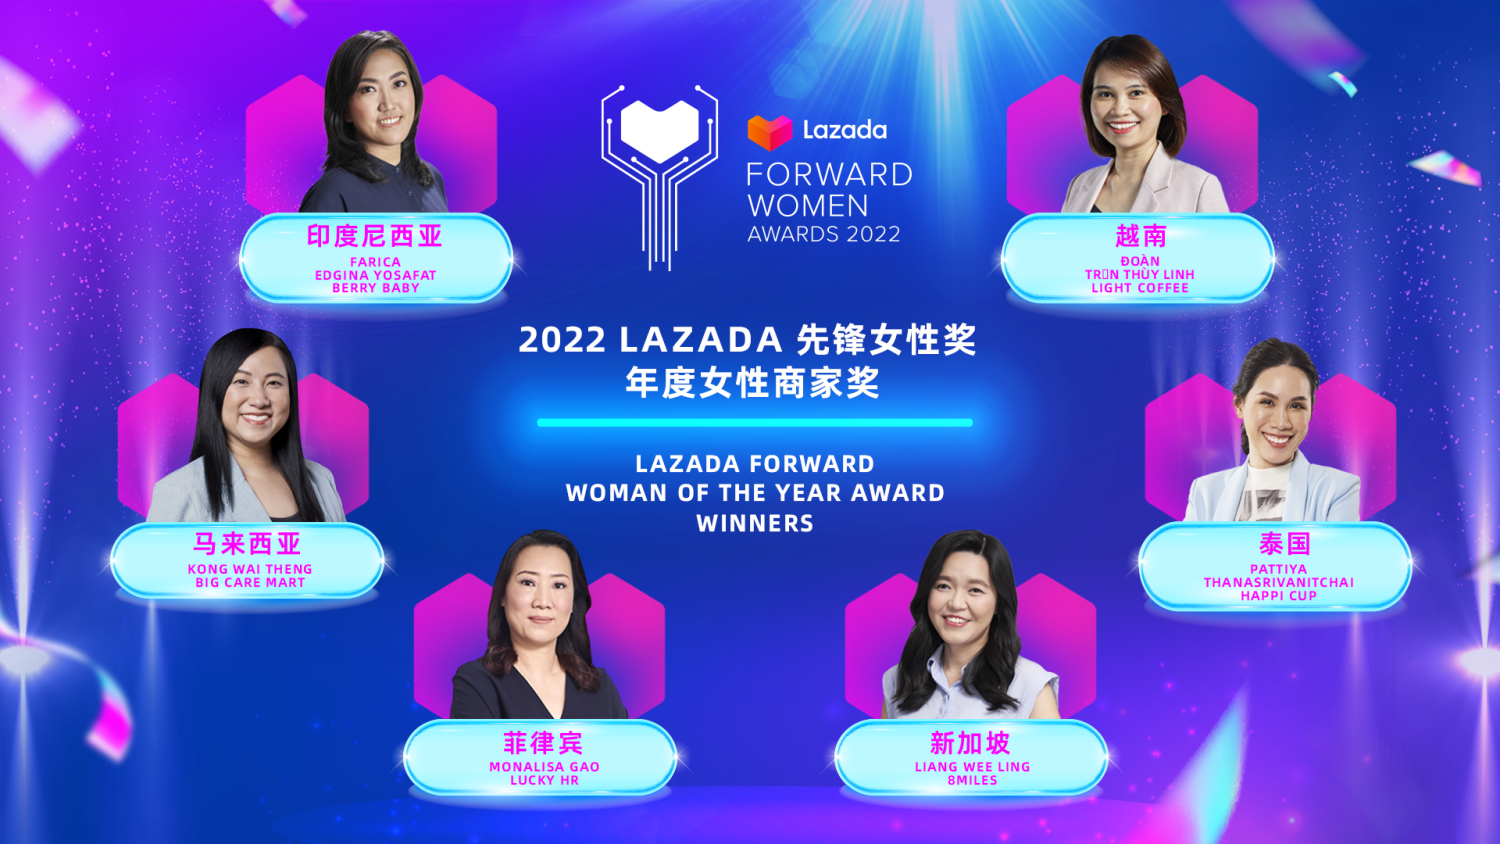 「Lazada年度女性商家獎」為本屆最受矚目的獎項，分別授予Lazada所在六大市場印尼、馬來西亞、菲律賓、新加坡、泰國和越南的東南亞成功女商家。